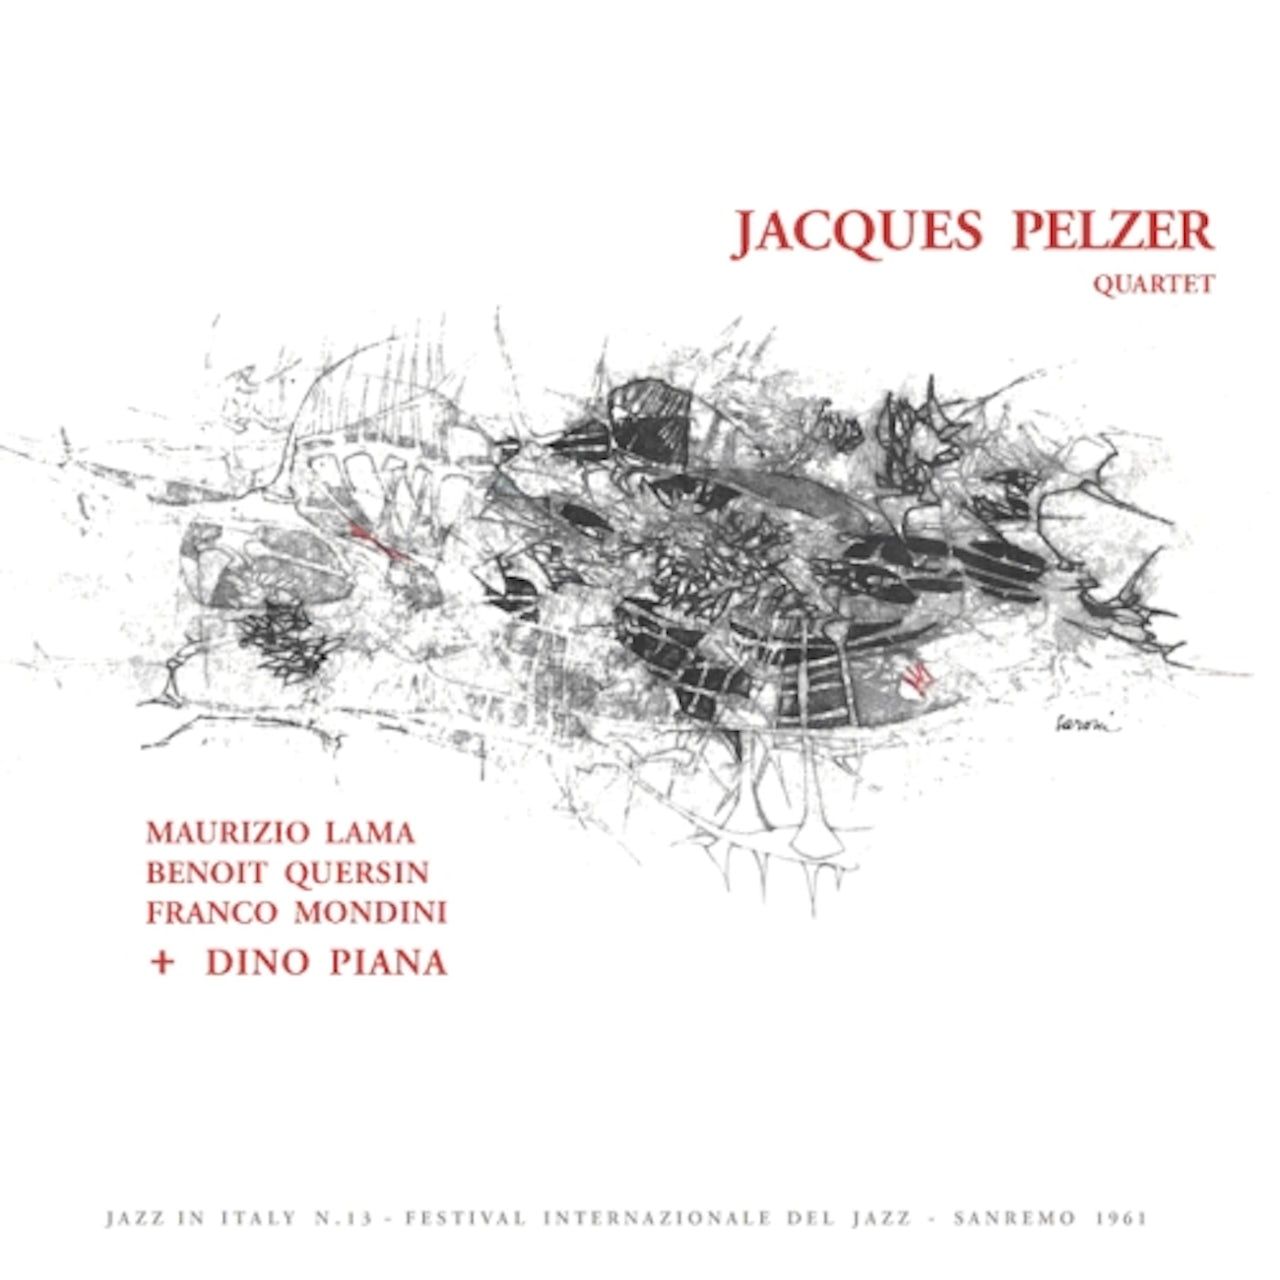 цена 8018344121345, Виниловая пластинка Jacques, Pelzer, Quartet